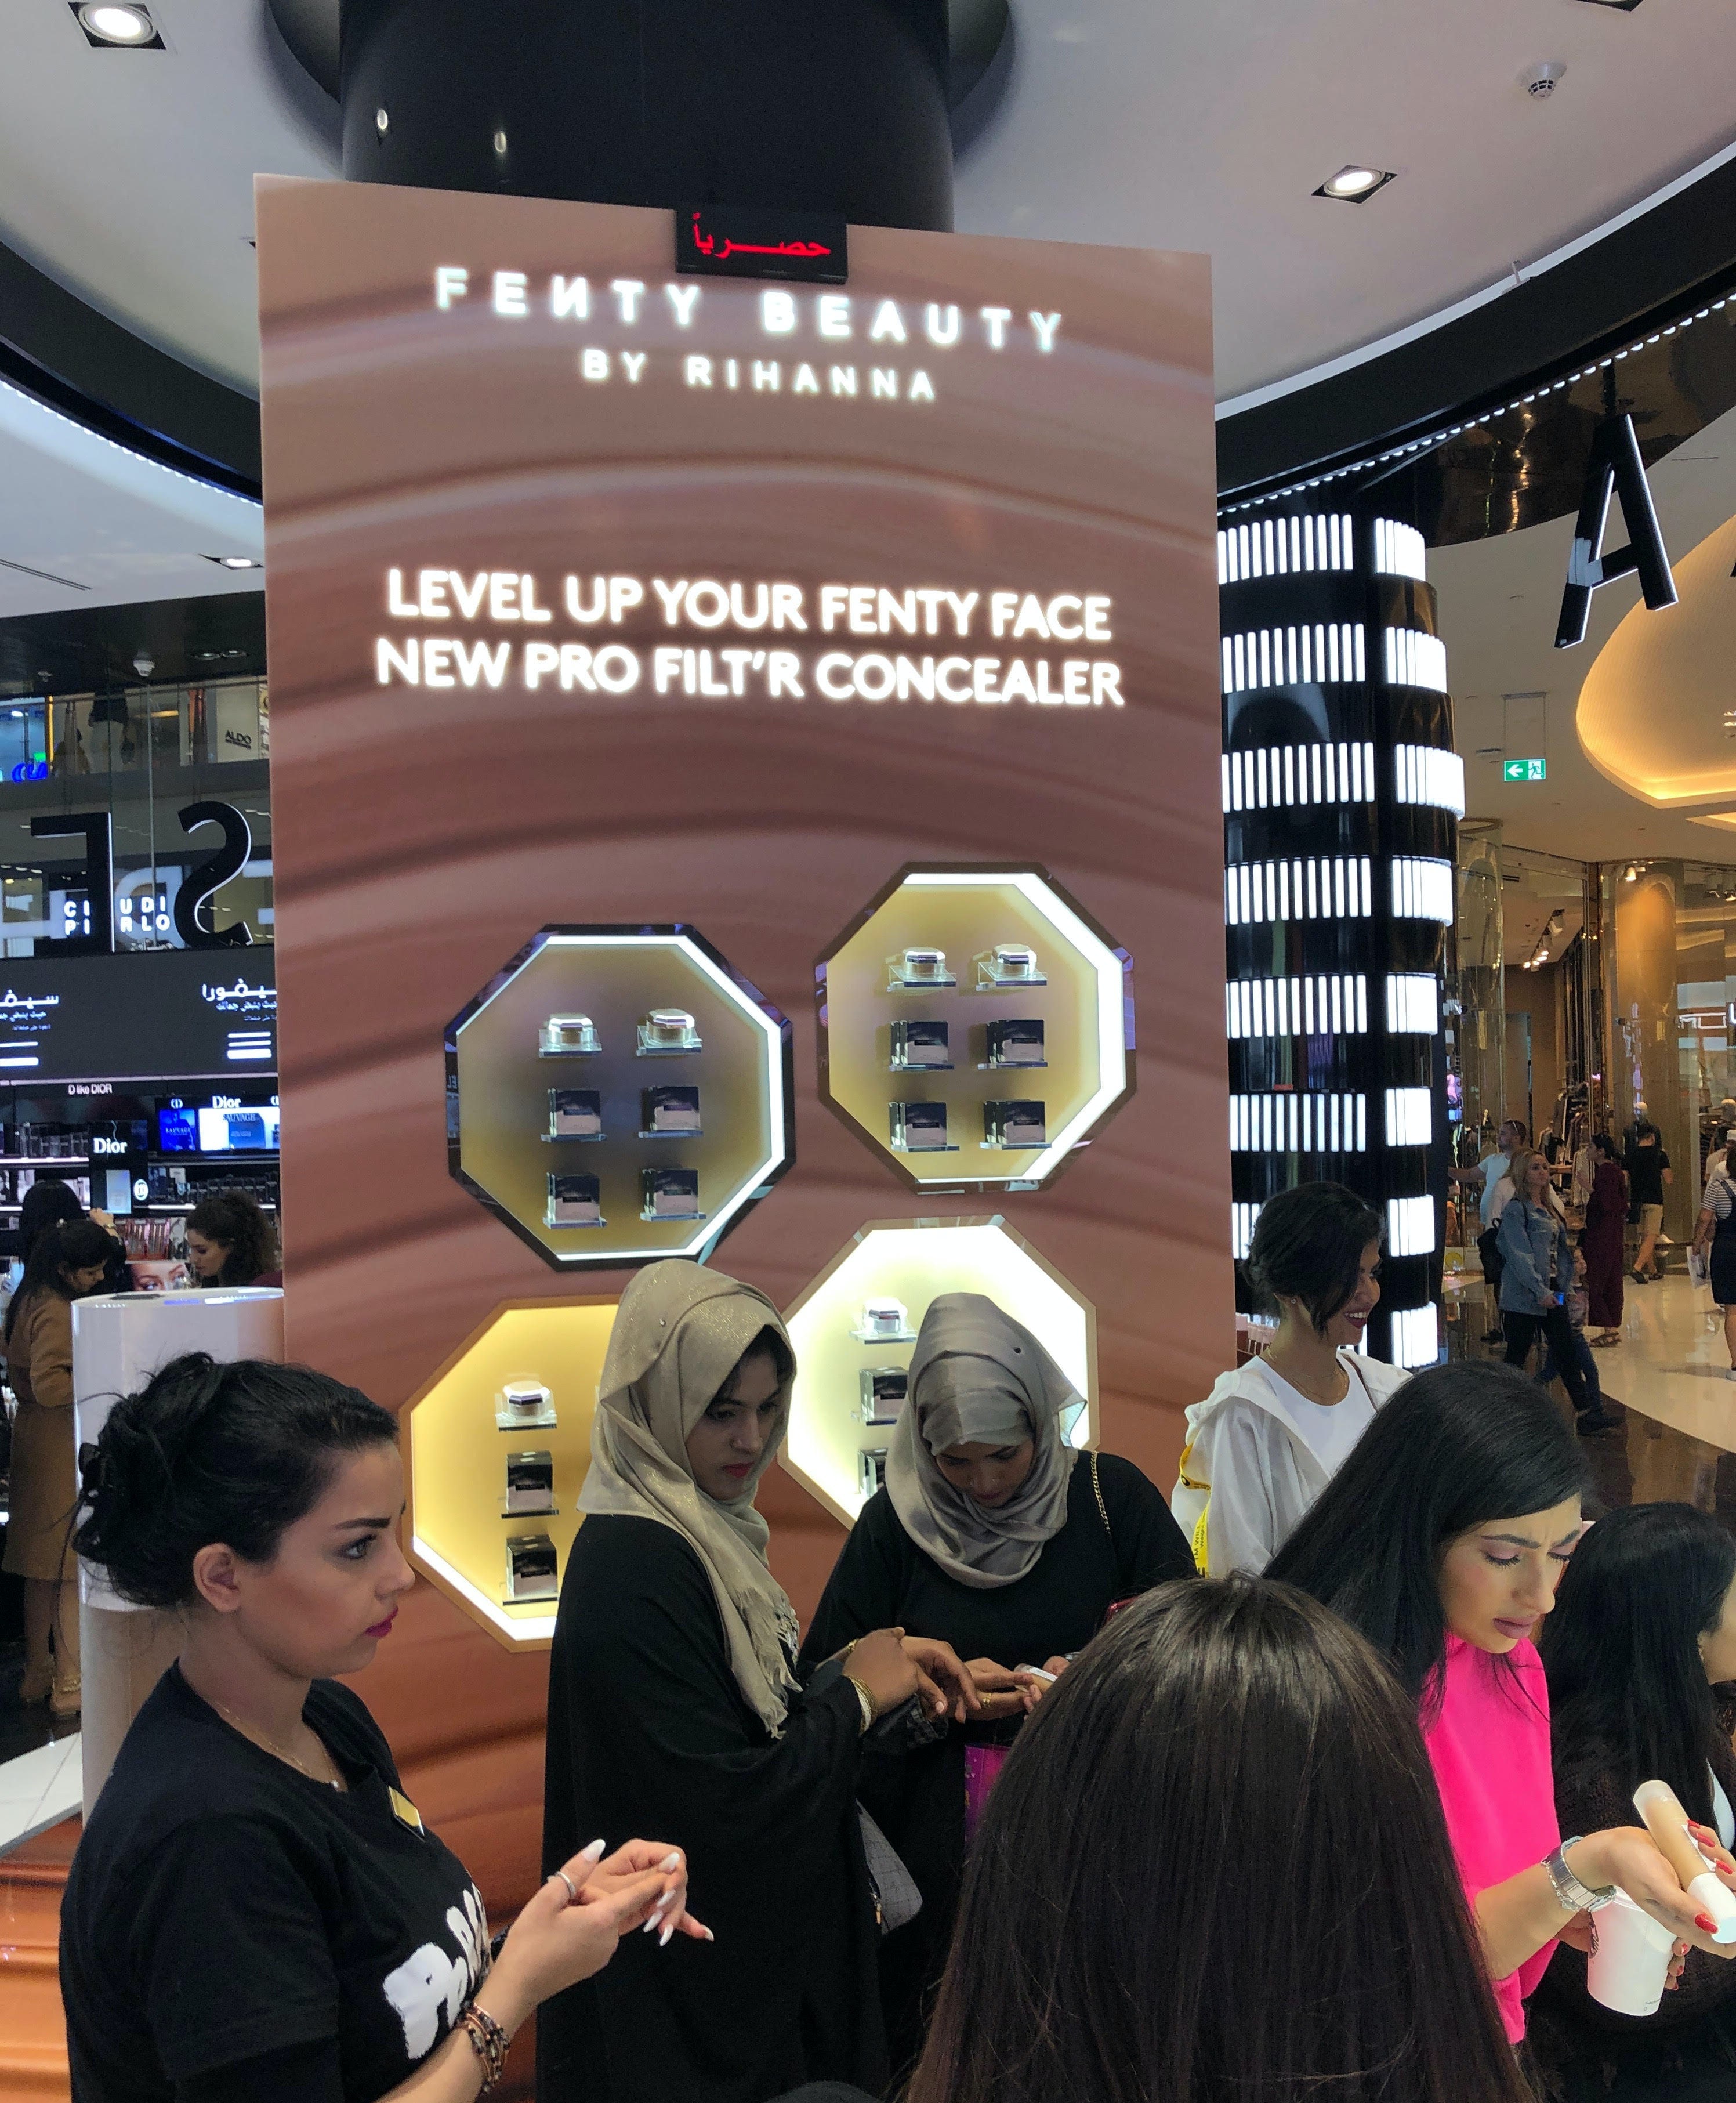 SEPHORA DUBAI HILLS MALL - Cosmetics store - Dubai - Zaubee